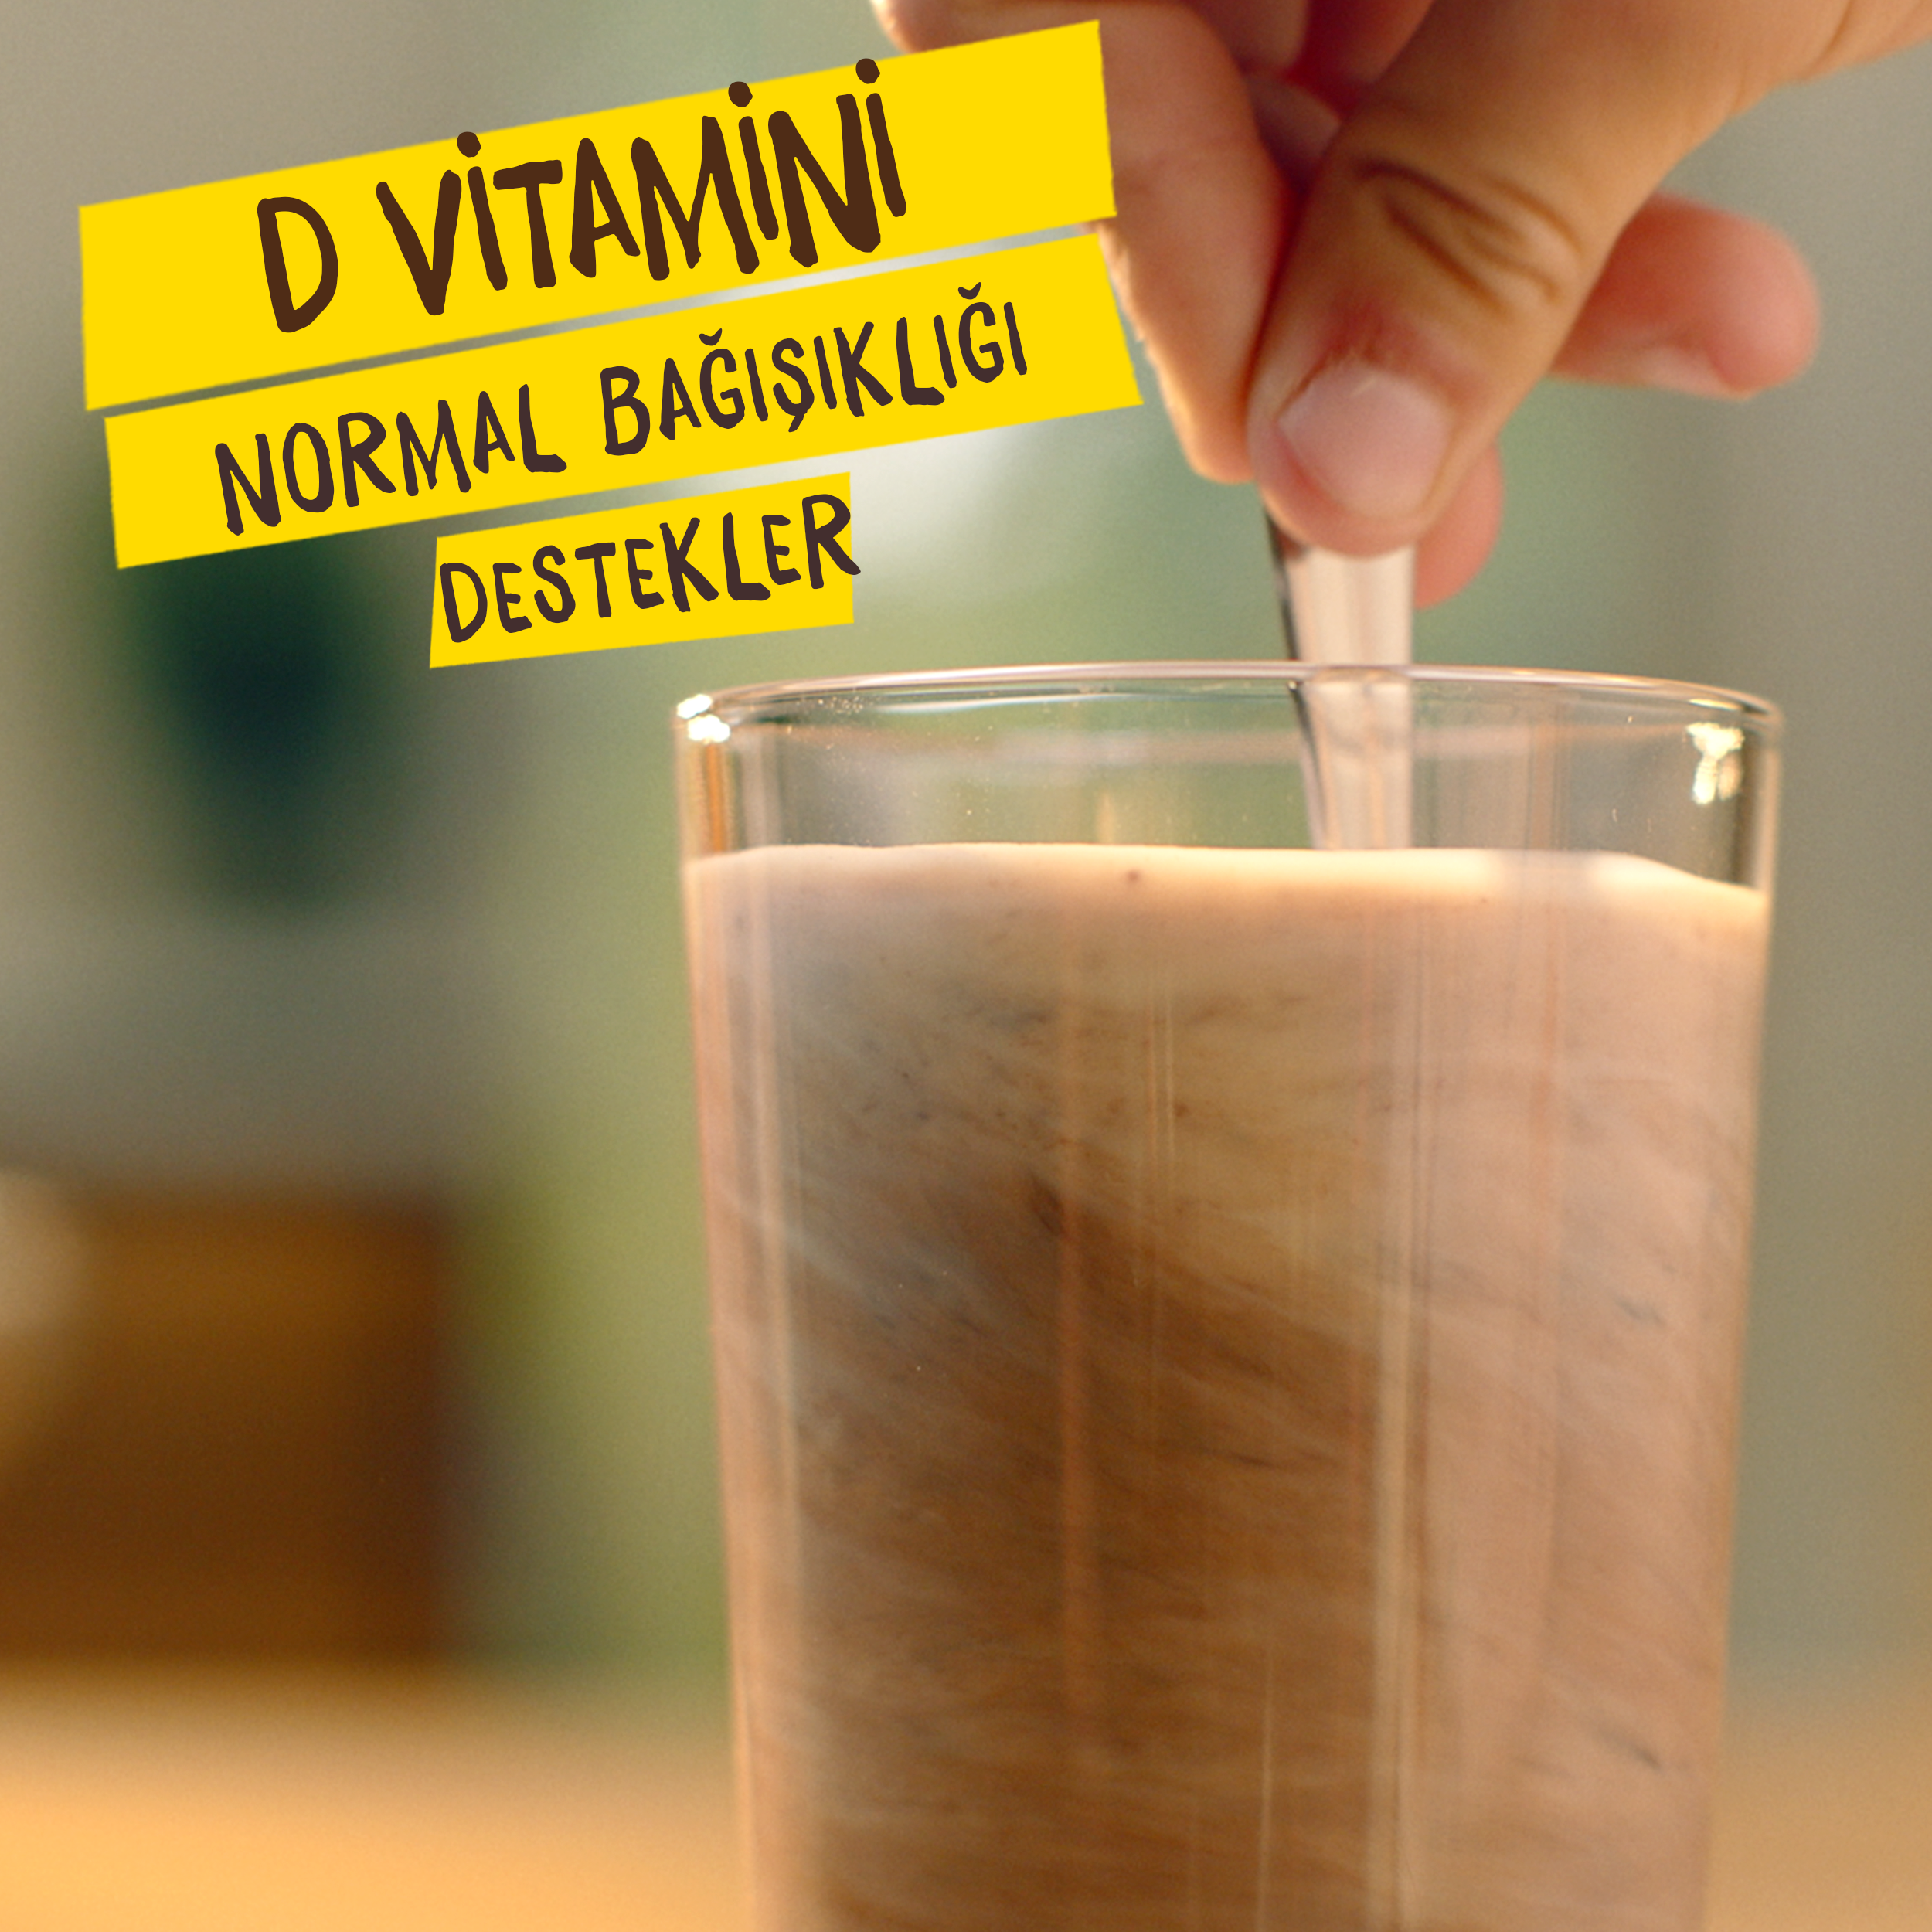 d vitamini normal bağışıklığı destekler